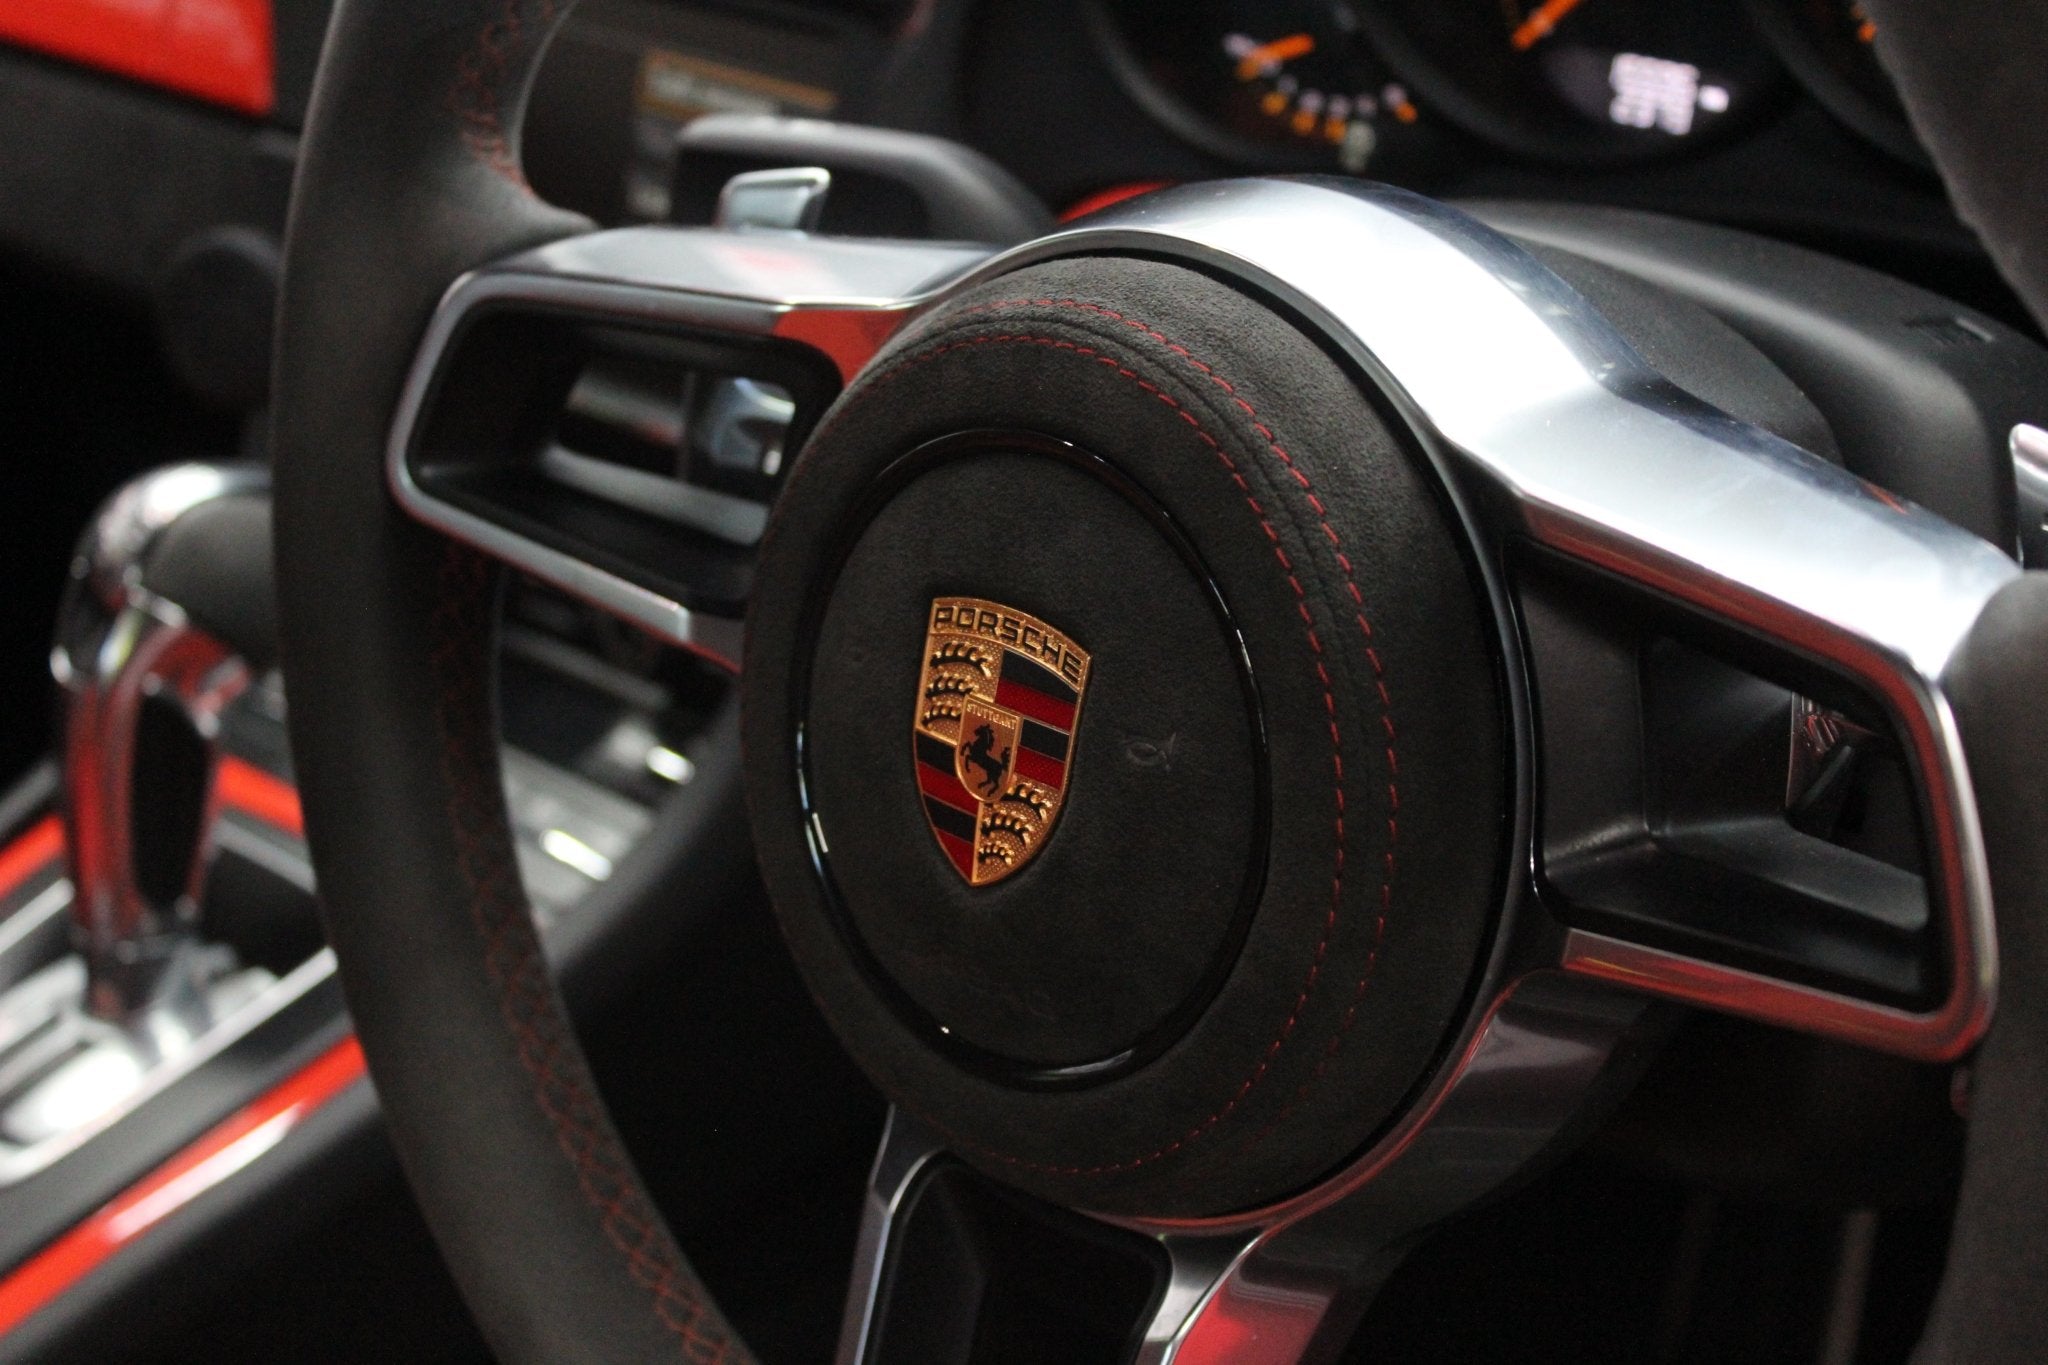 Porsche alcantara airbag cover